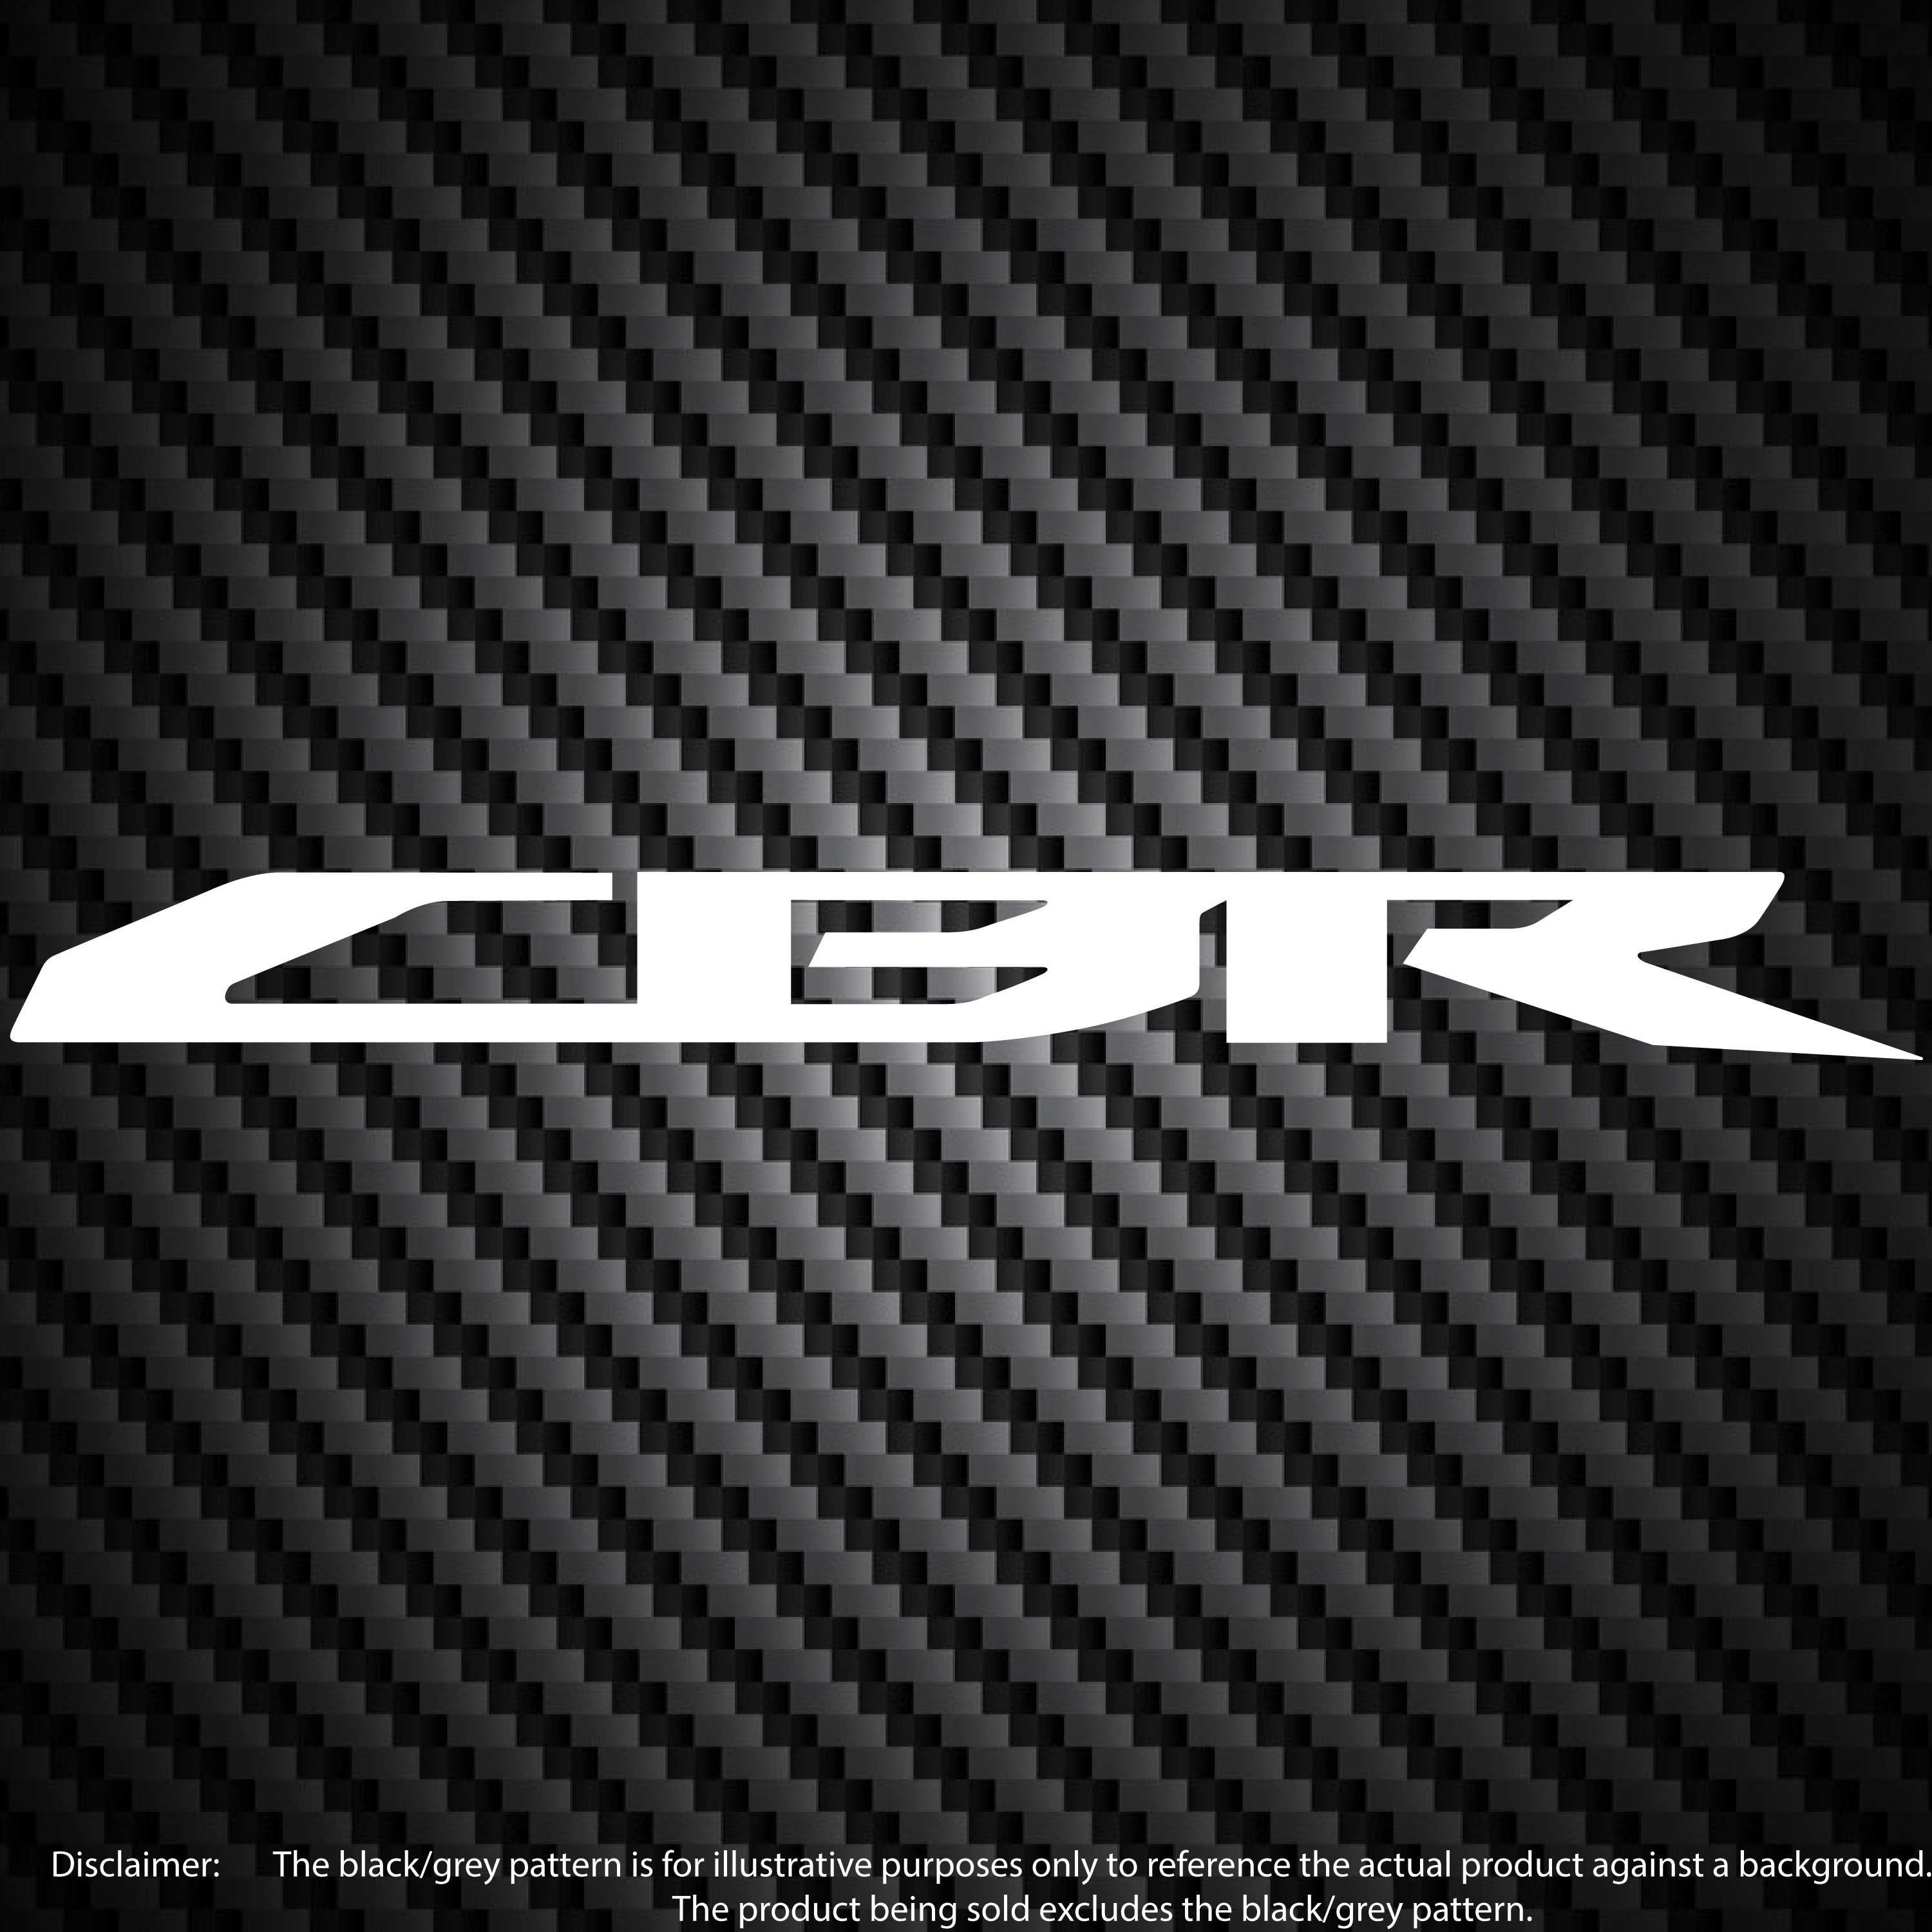 Cbr letter logo design on white background Vector Image